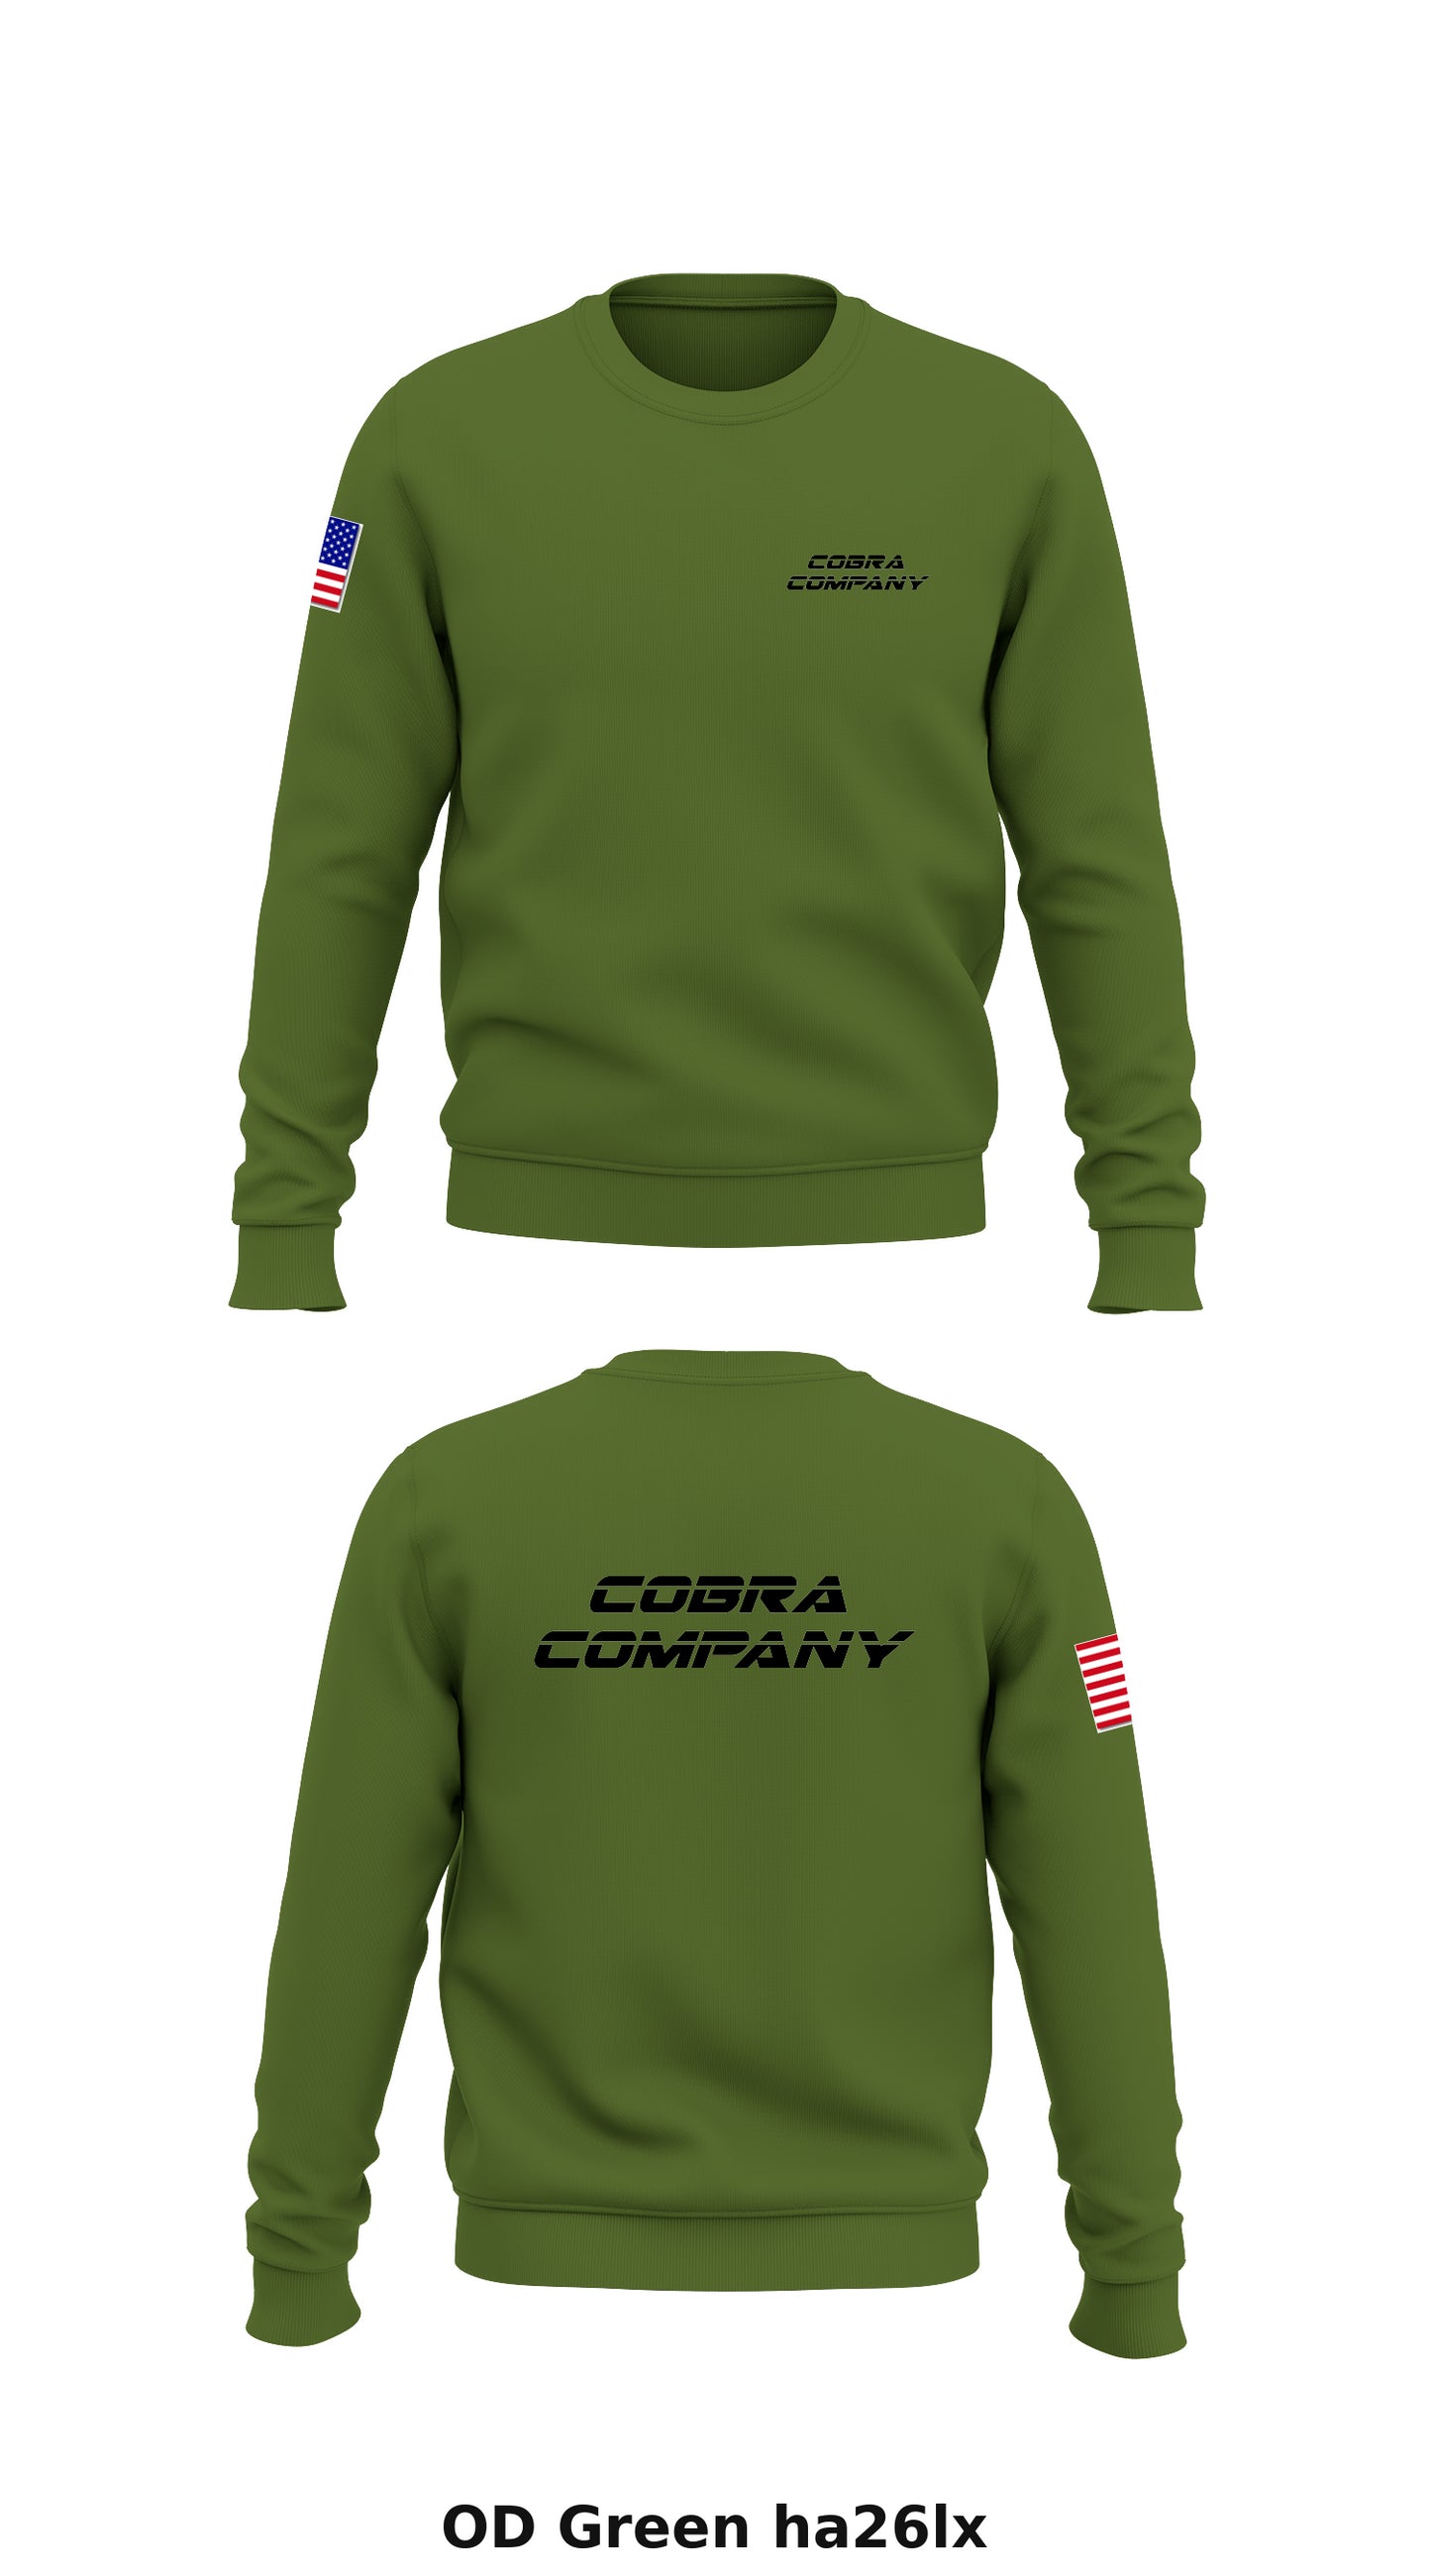 Cobra Company Store 1 Core Men's Crewneck Performance Sweatshirt - ha26lx